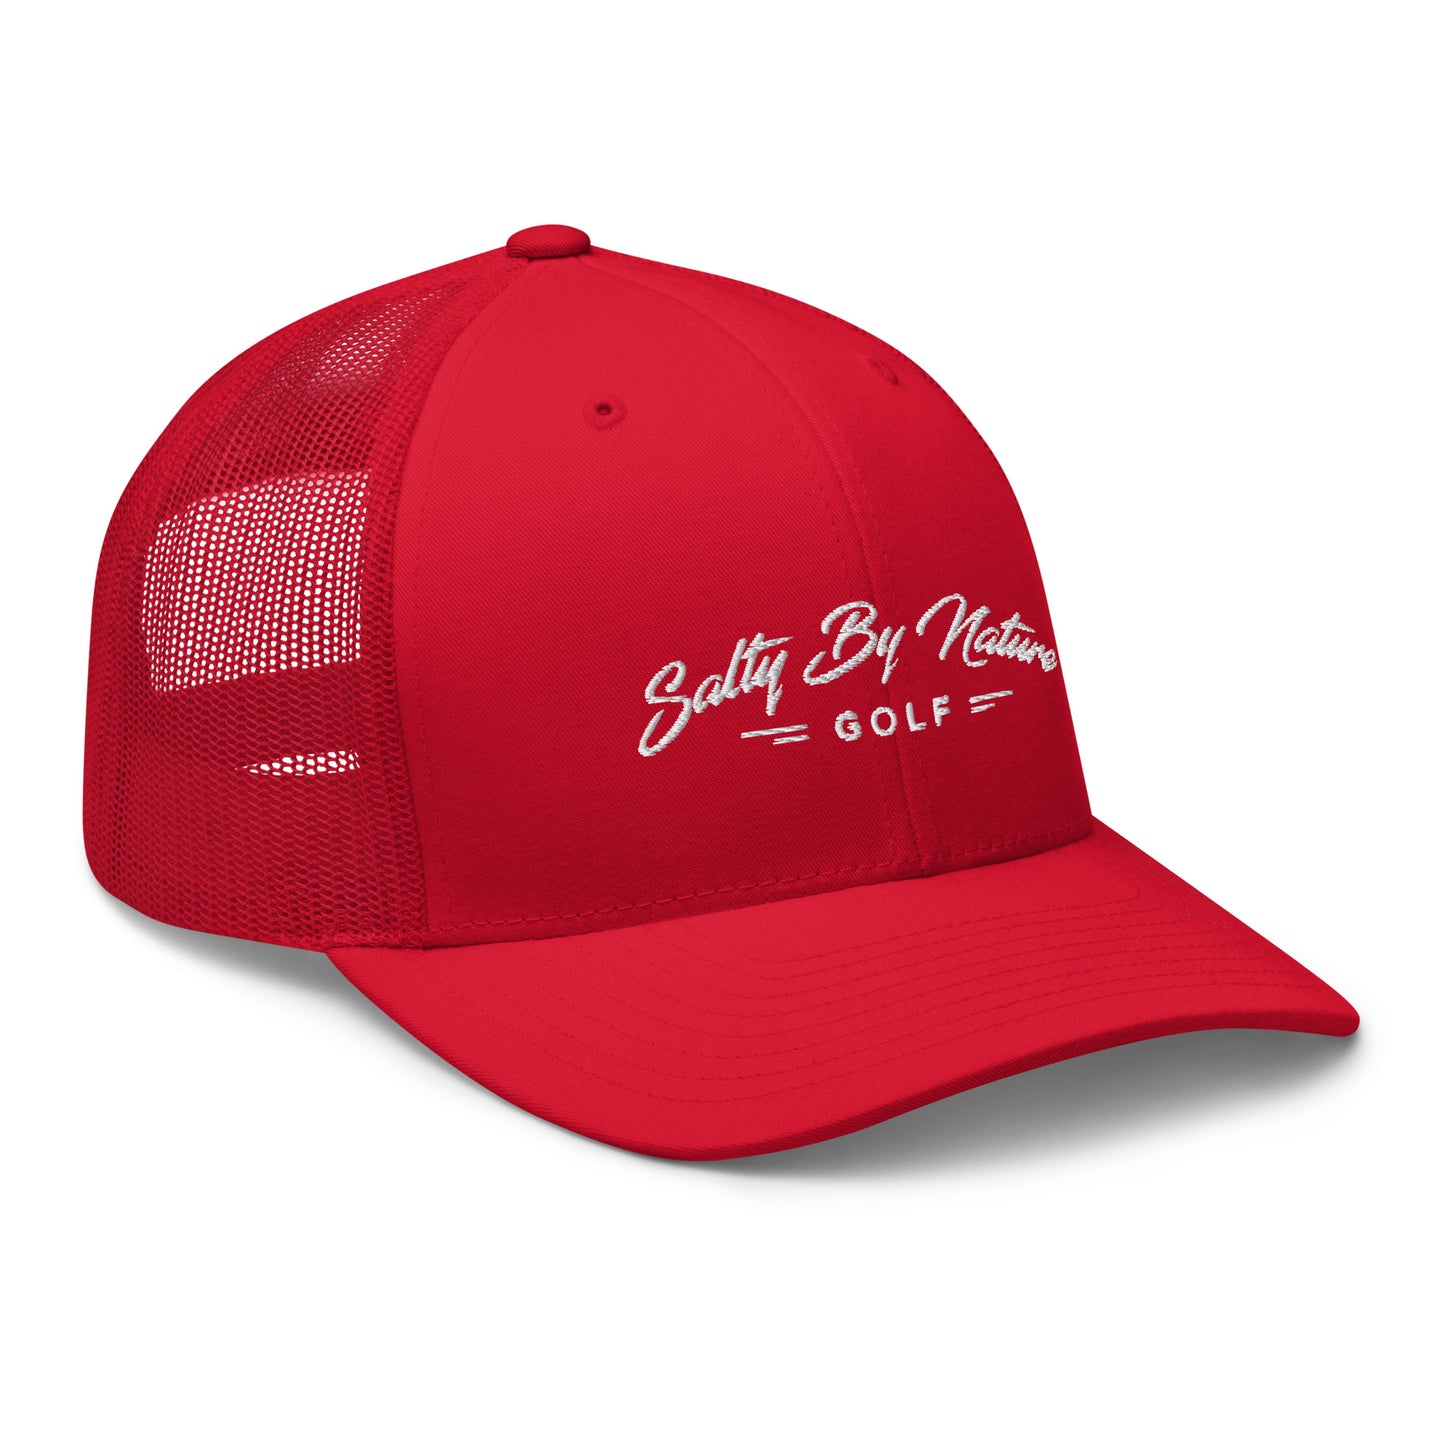 SBN Golf - Trucker Hat